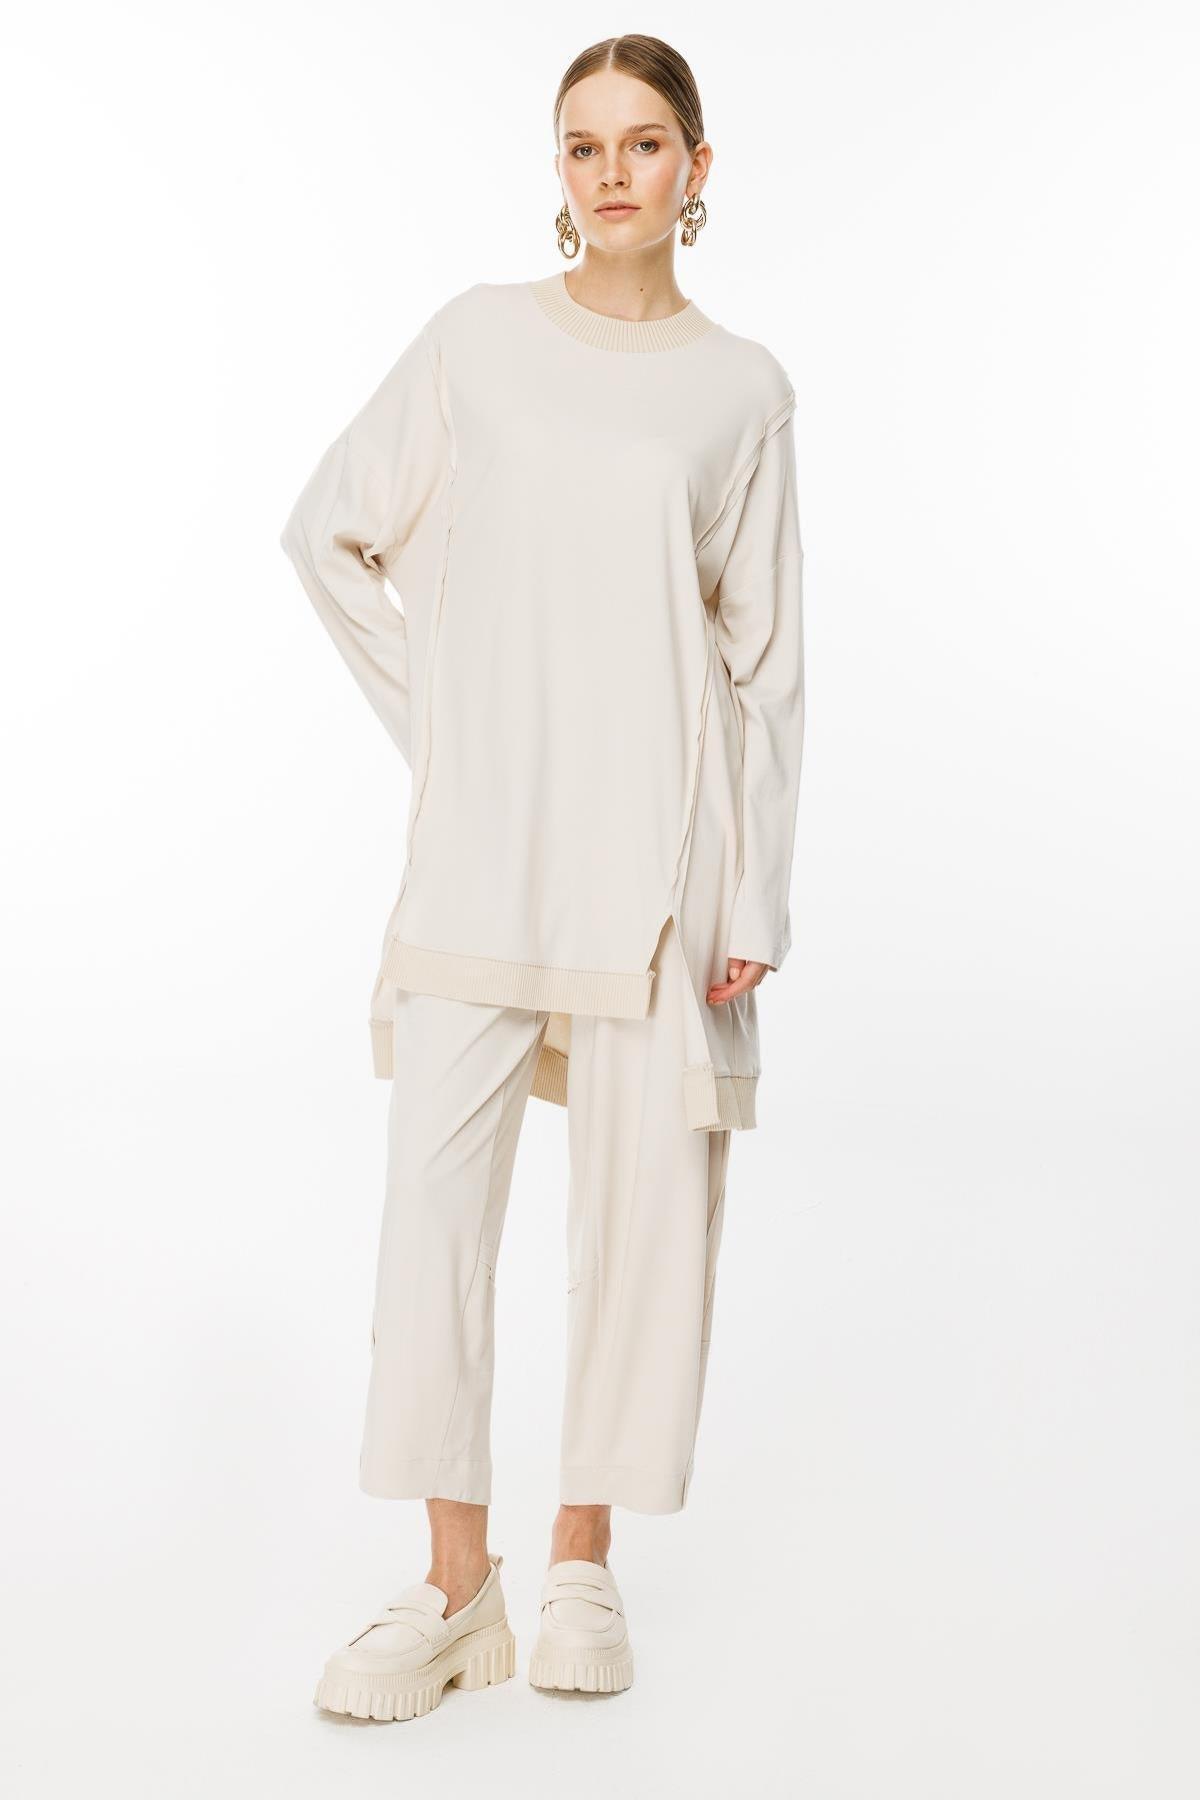 Ribana Detaylı Tunik Pantolon Takım - Eser Giyim